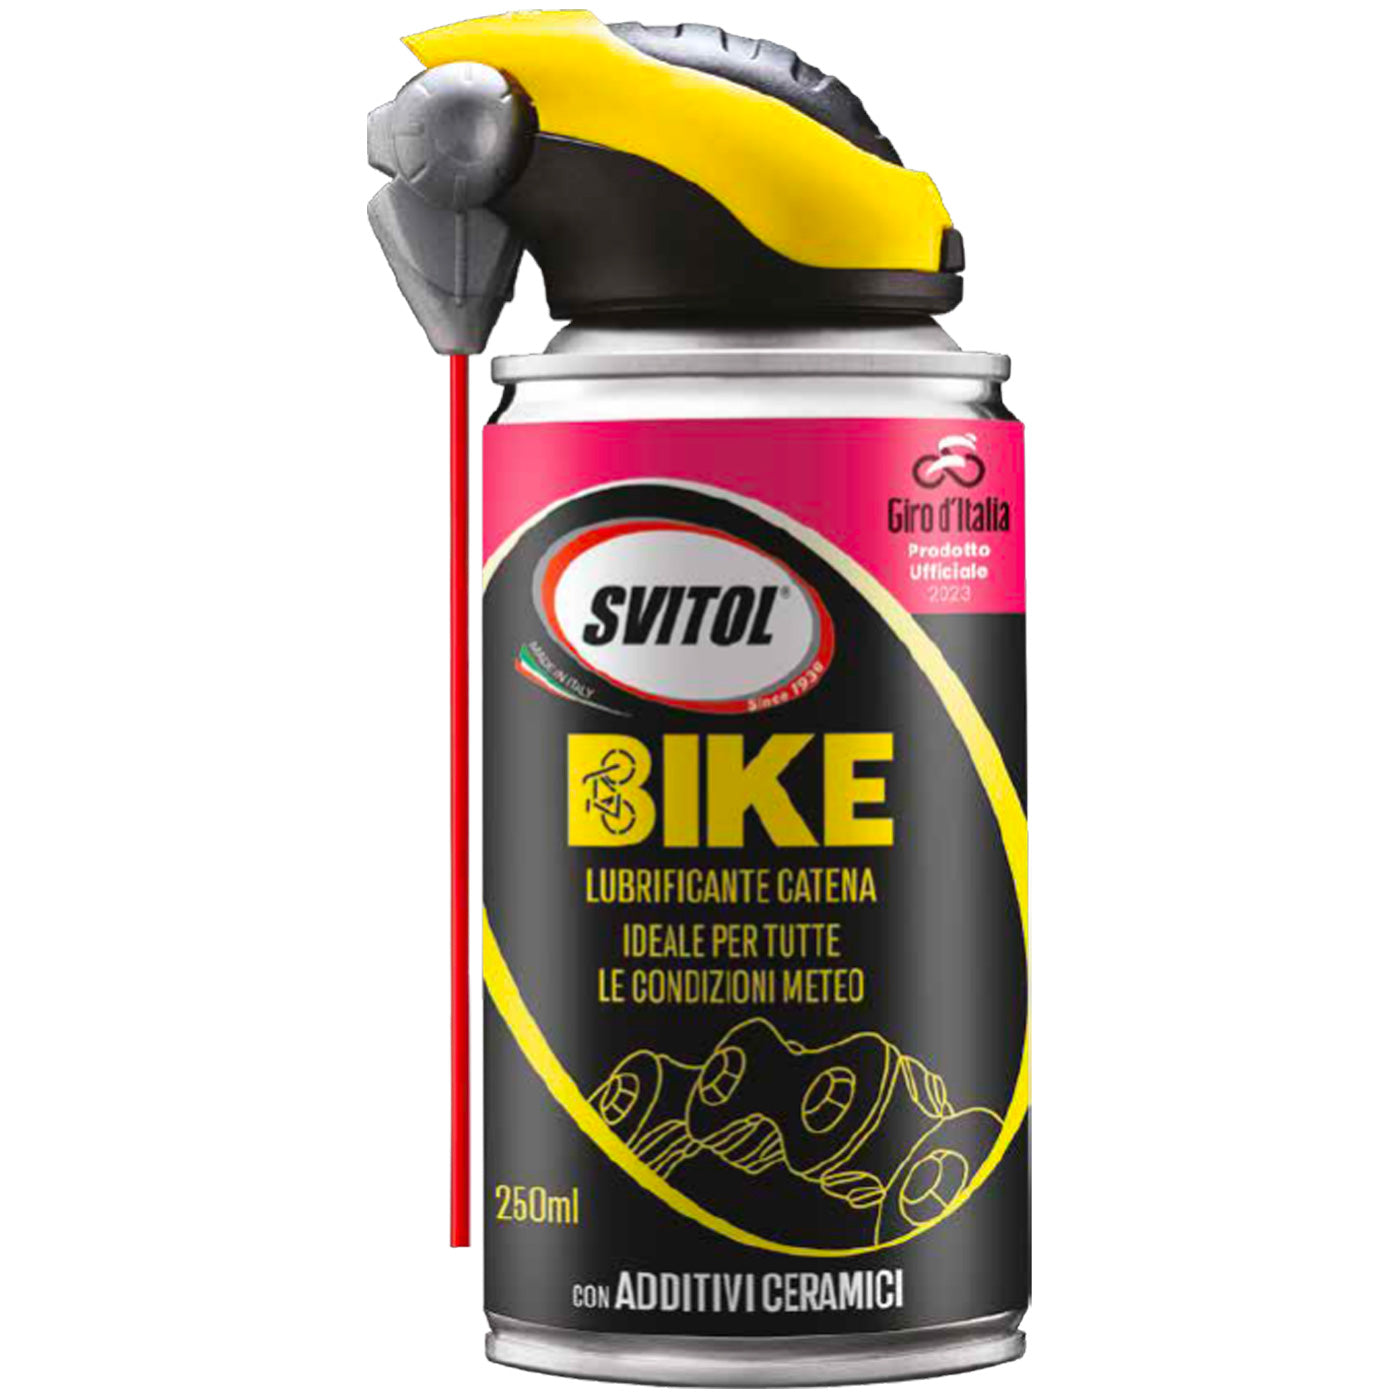 Svitol Giro d'Italia bike cleaning kit